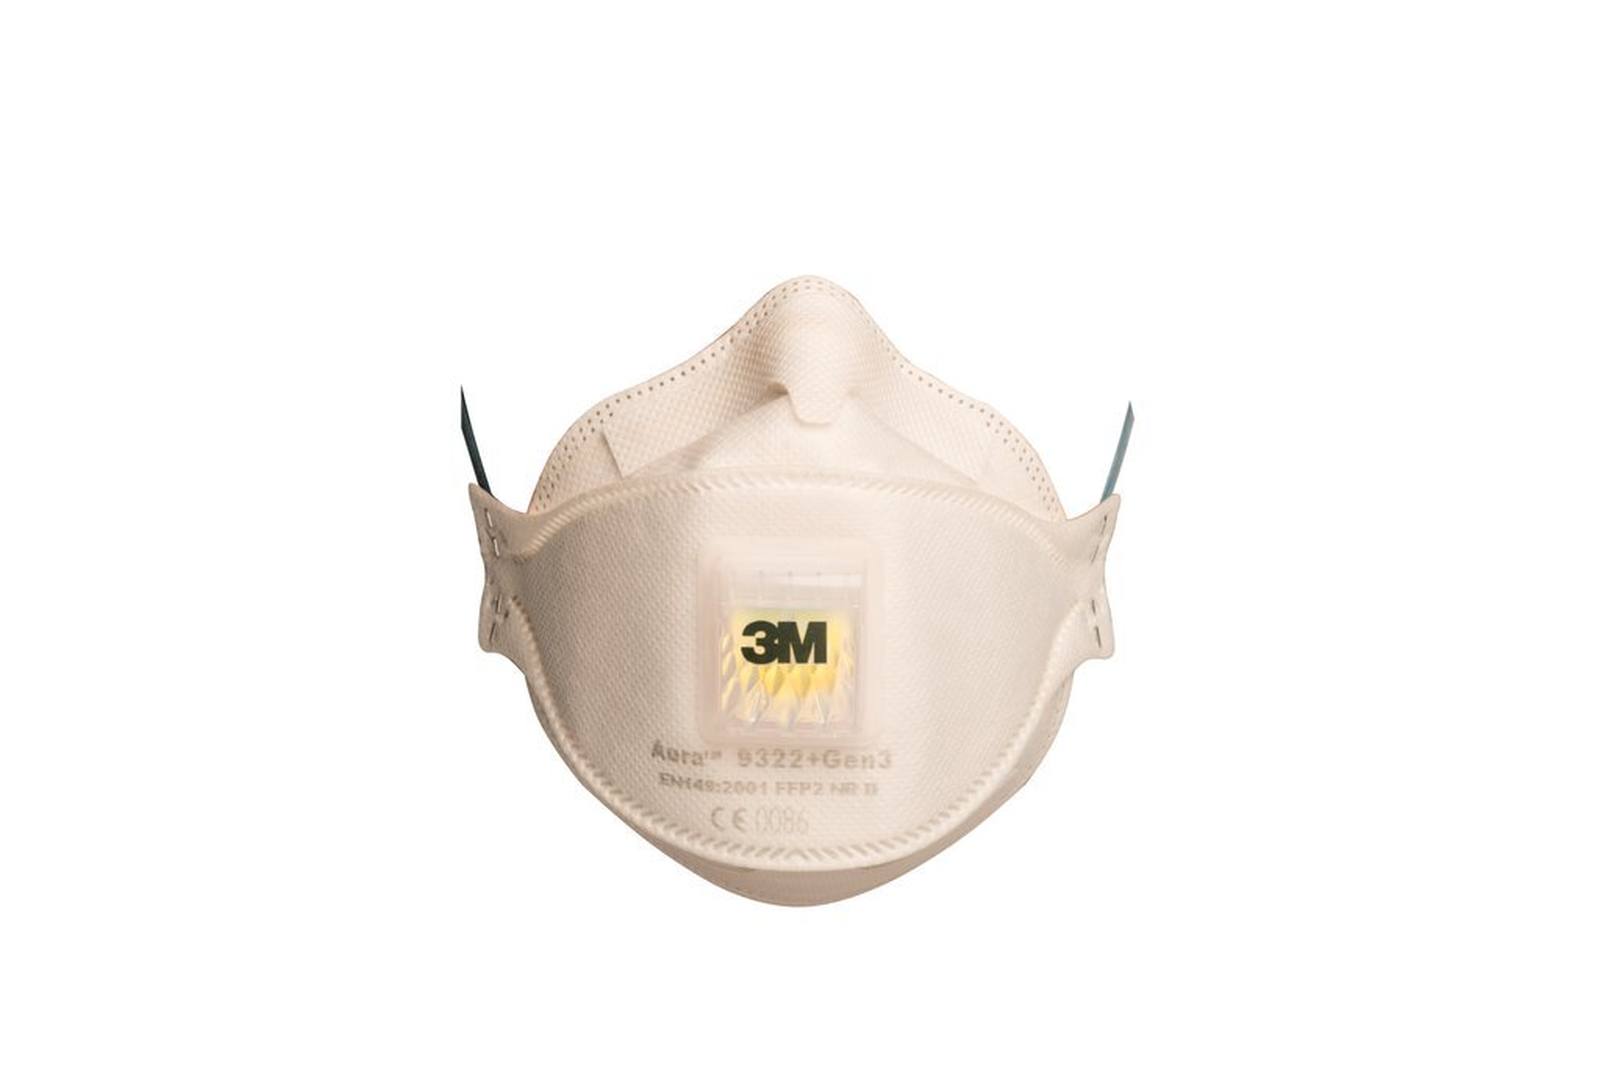 3M 9322+ Gen3 SV Aura Atemschutzmaske FFP2 mit Cool-Flow Ausatemventil, bis zum 10-fachen des Grenzwertes (hygienisch einzelverpackt), Kleinpackung